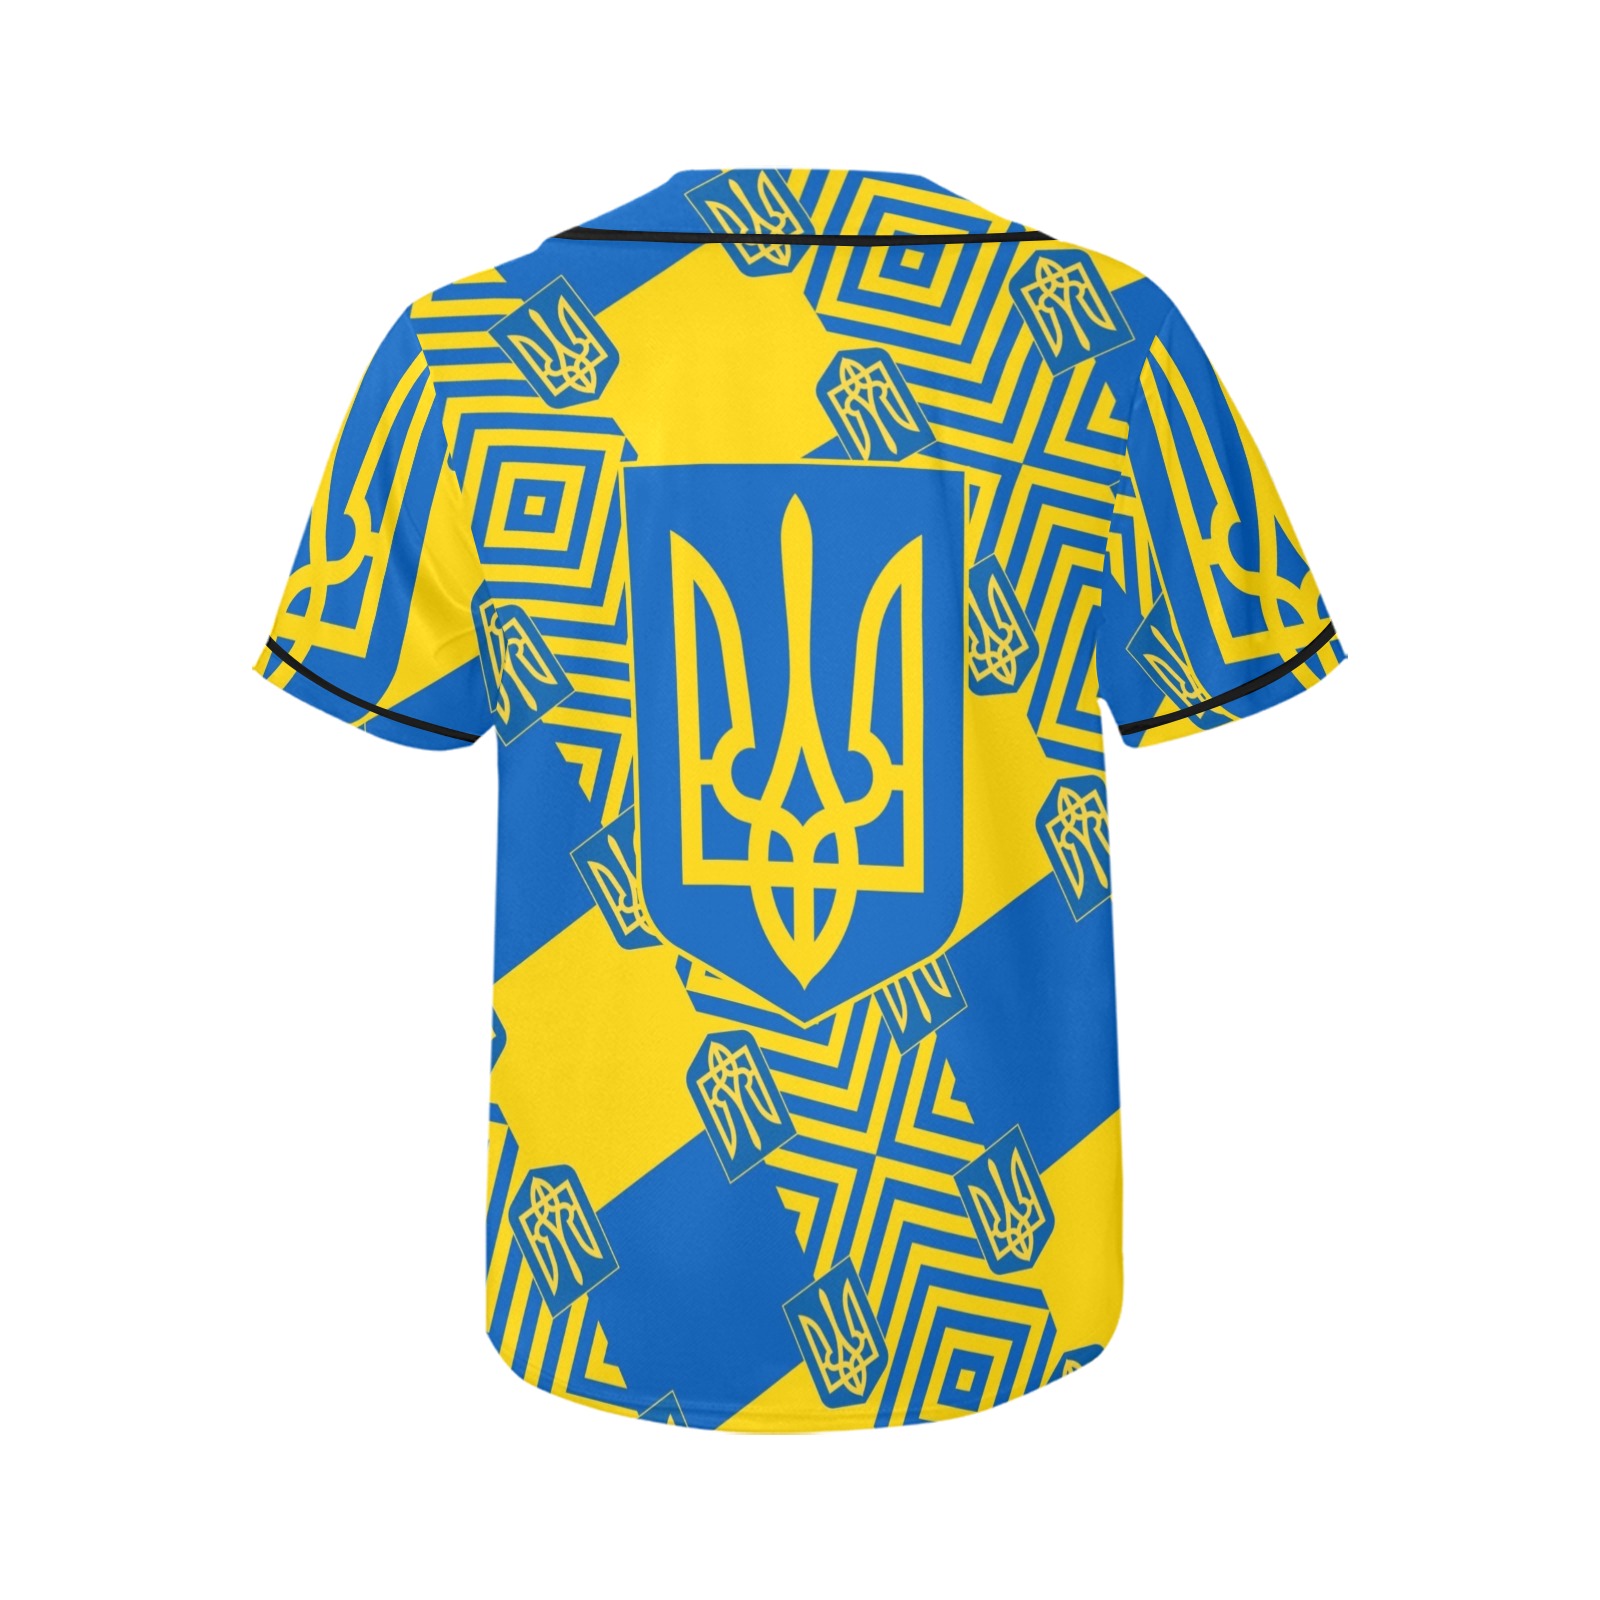 UKRAINE 2 All Over Print Baseball Jersey for Women (Model T50)